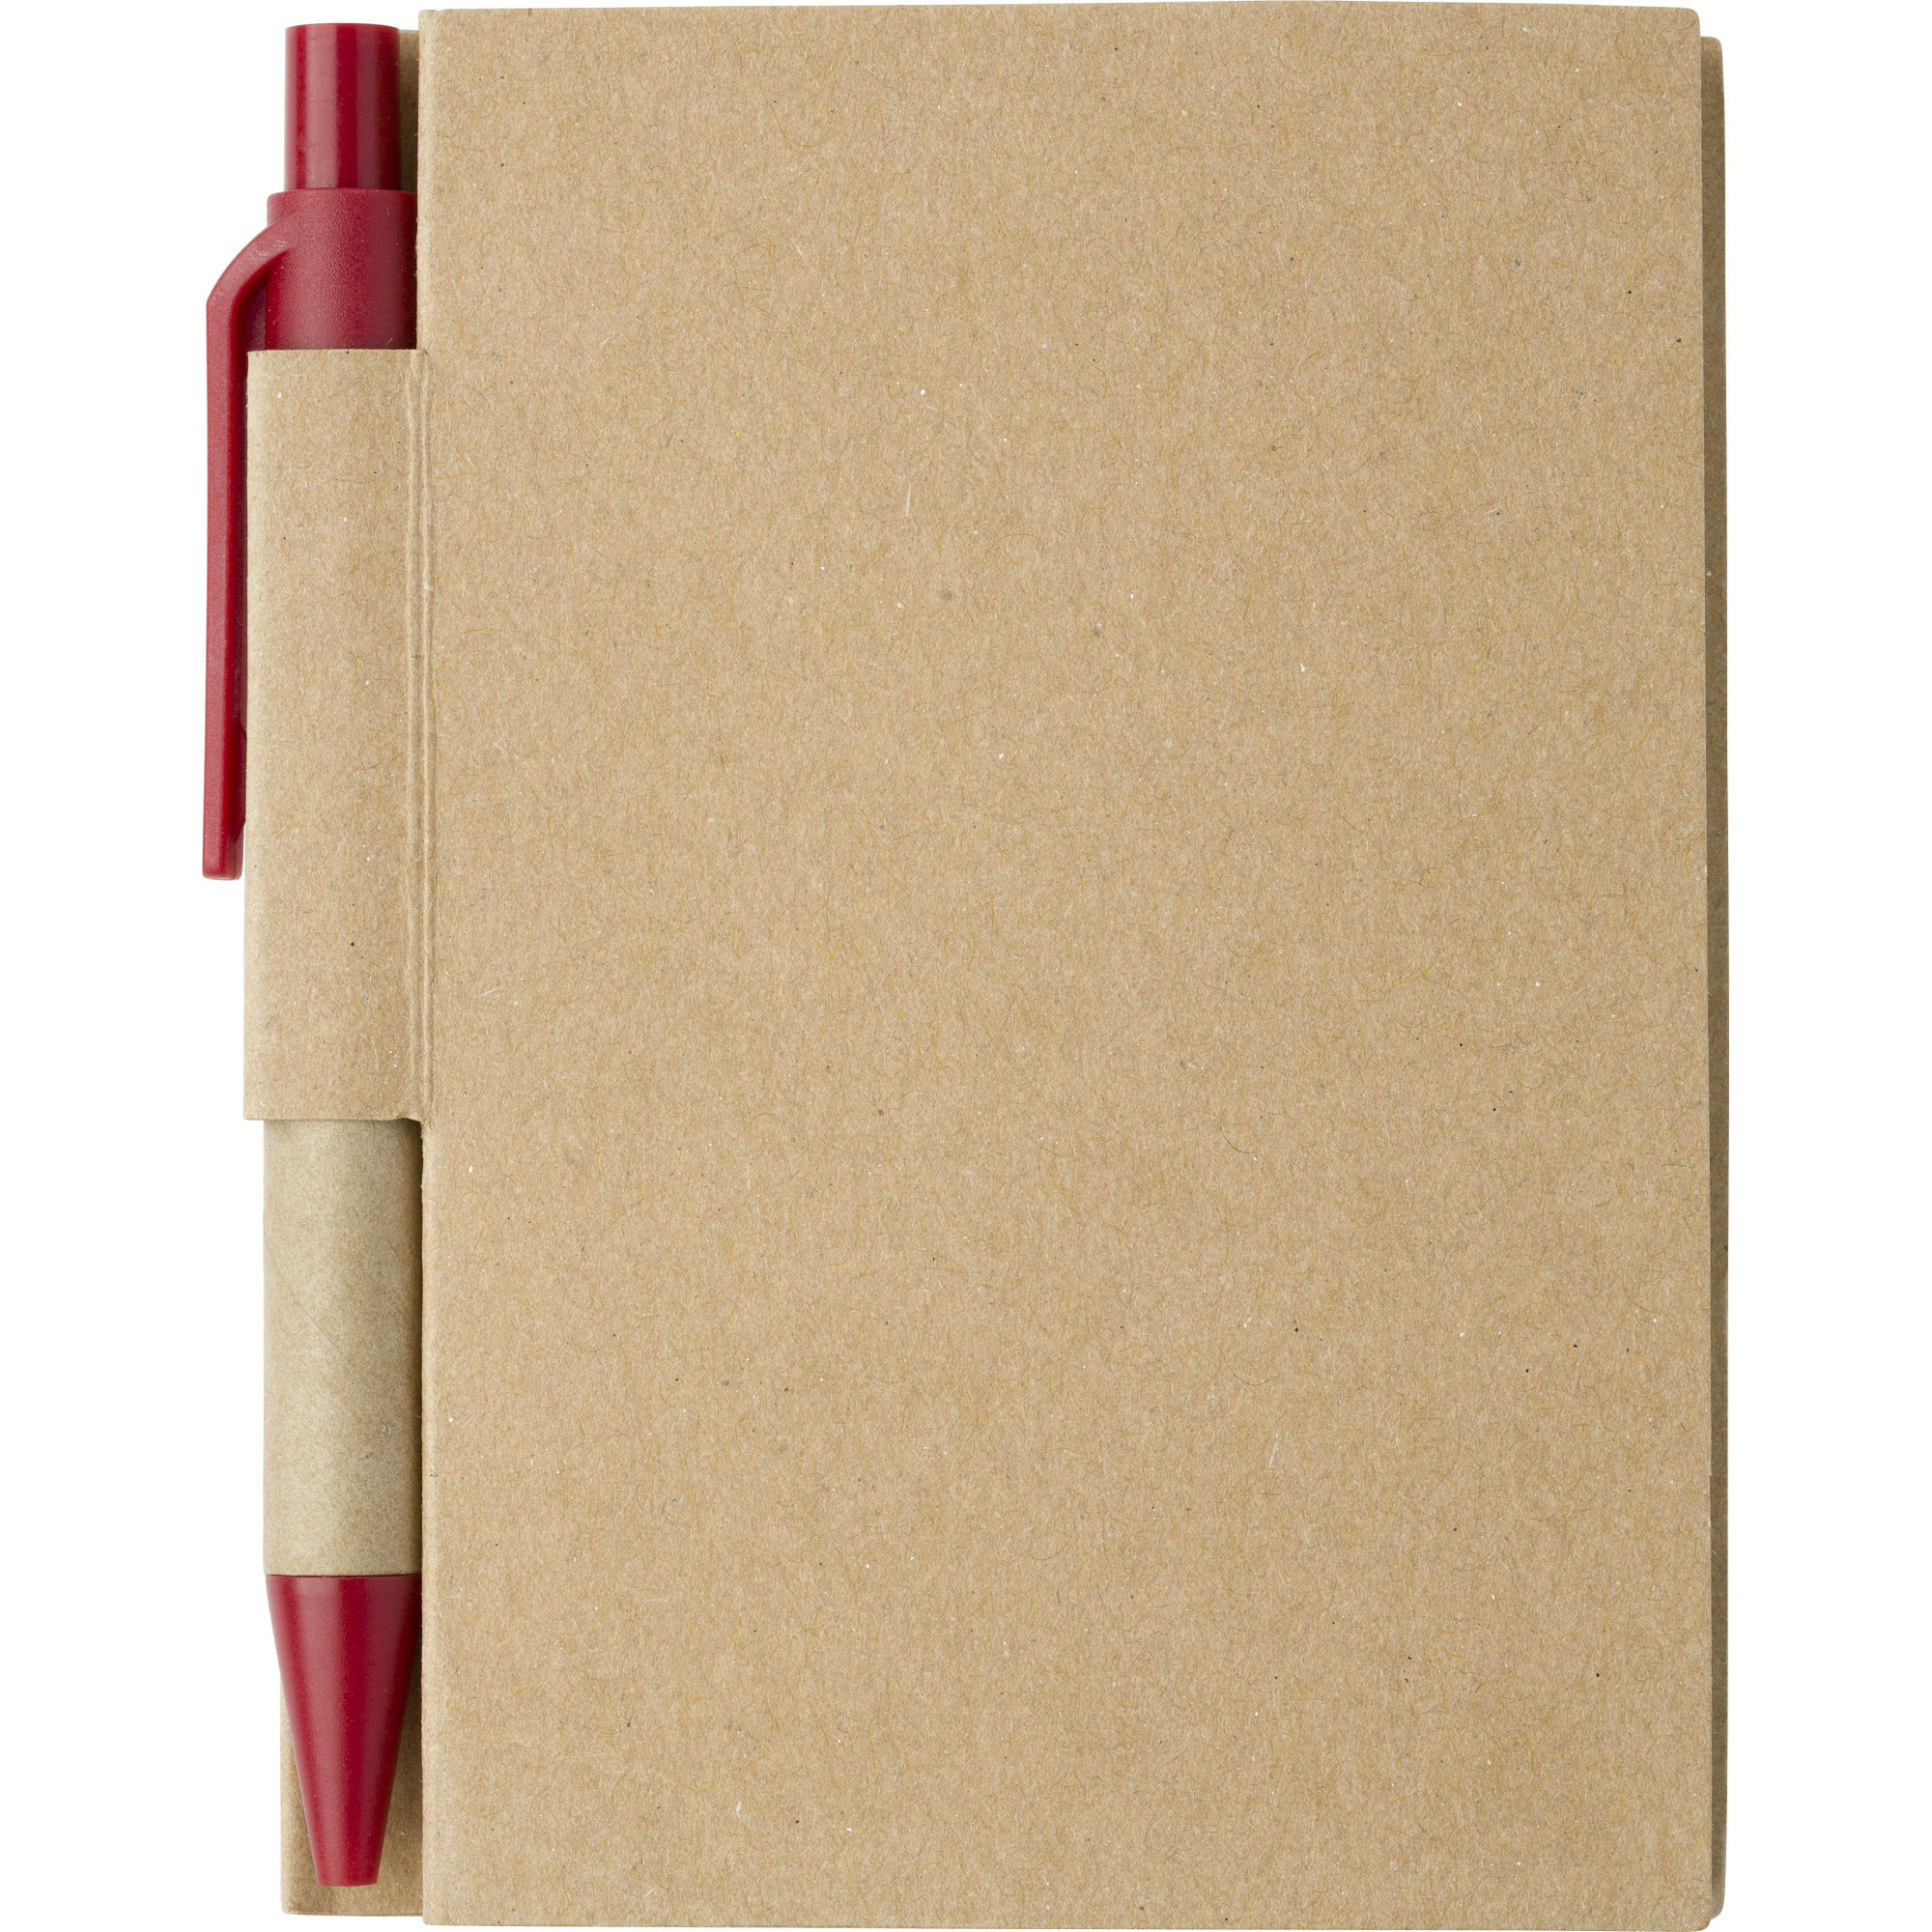 Notitie boekje-blok met balpen harde kaft beige-rood 11 x 8 cm 80 bladzijden gelinieerd